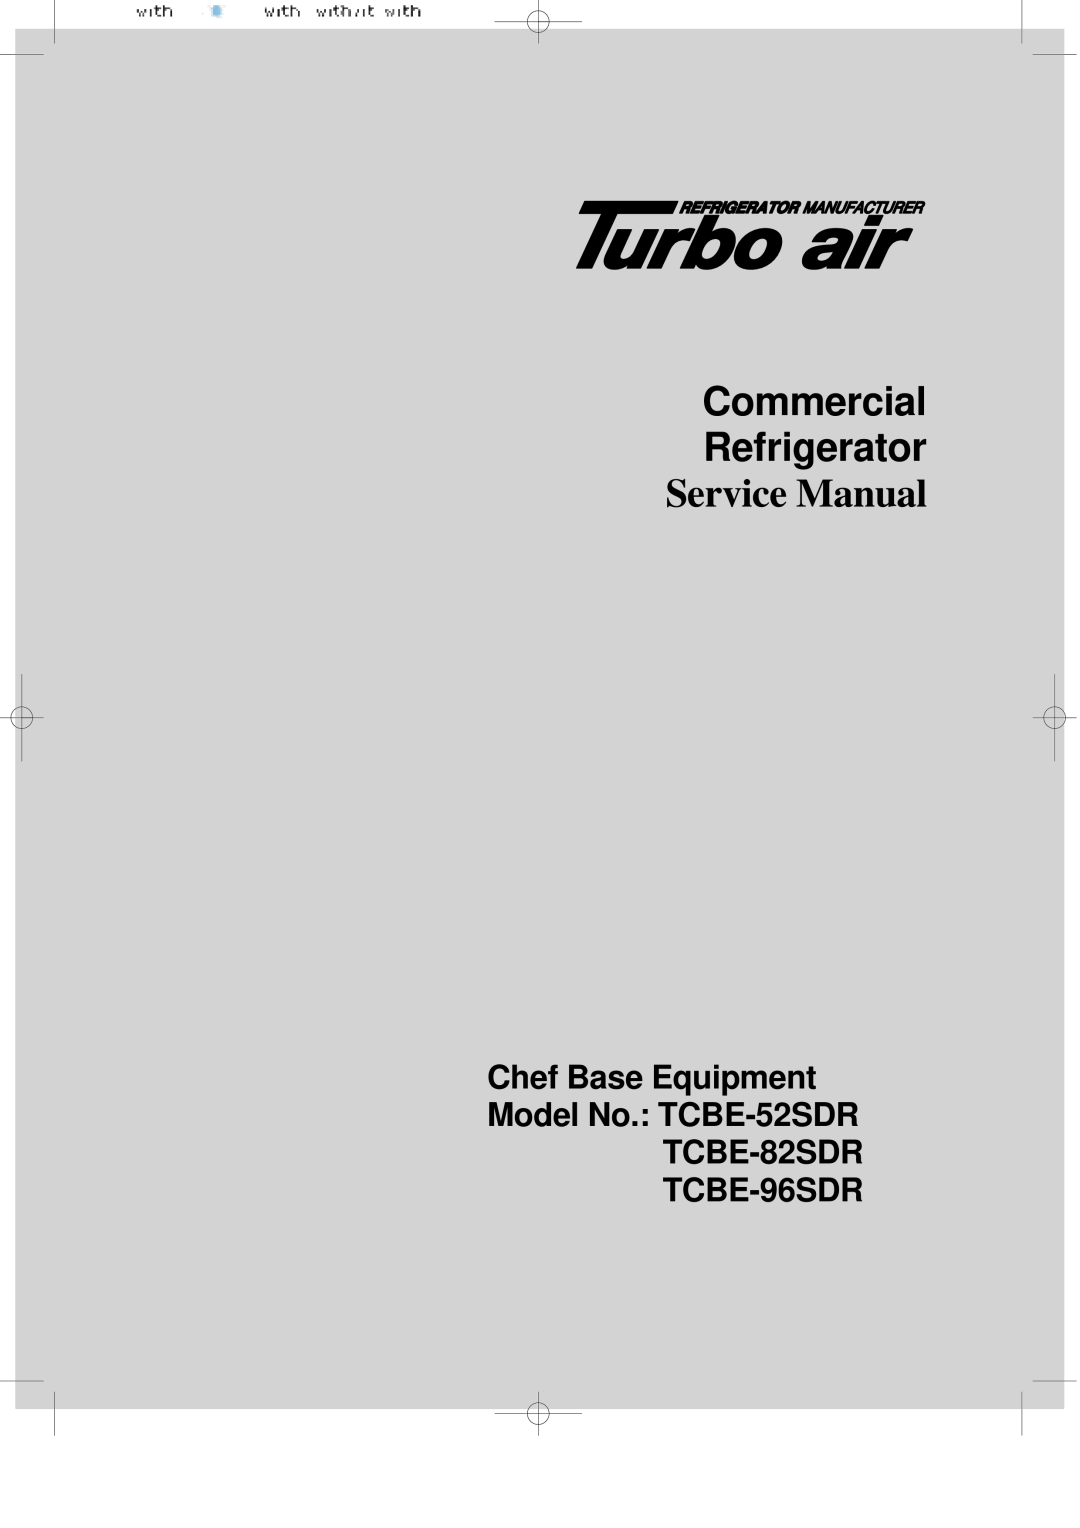 Turbo Air TCBE-96SDR, TCBE-82SDR manual Commercial Refrigerator, Service Manual, Chef Base Equipment Model No.: TCBE-52SDR 